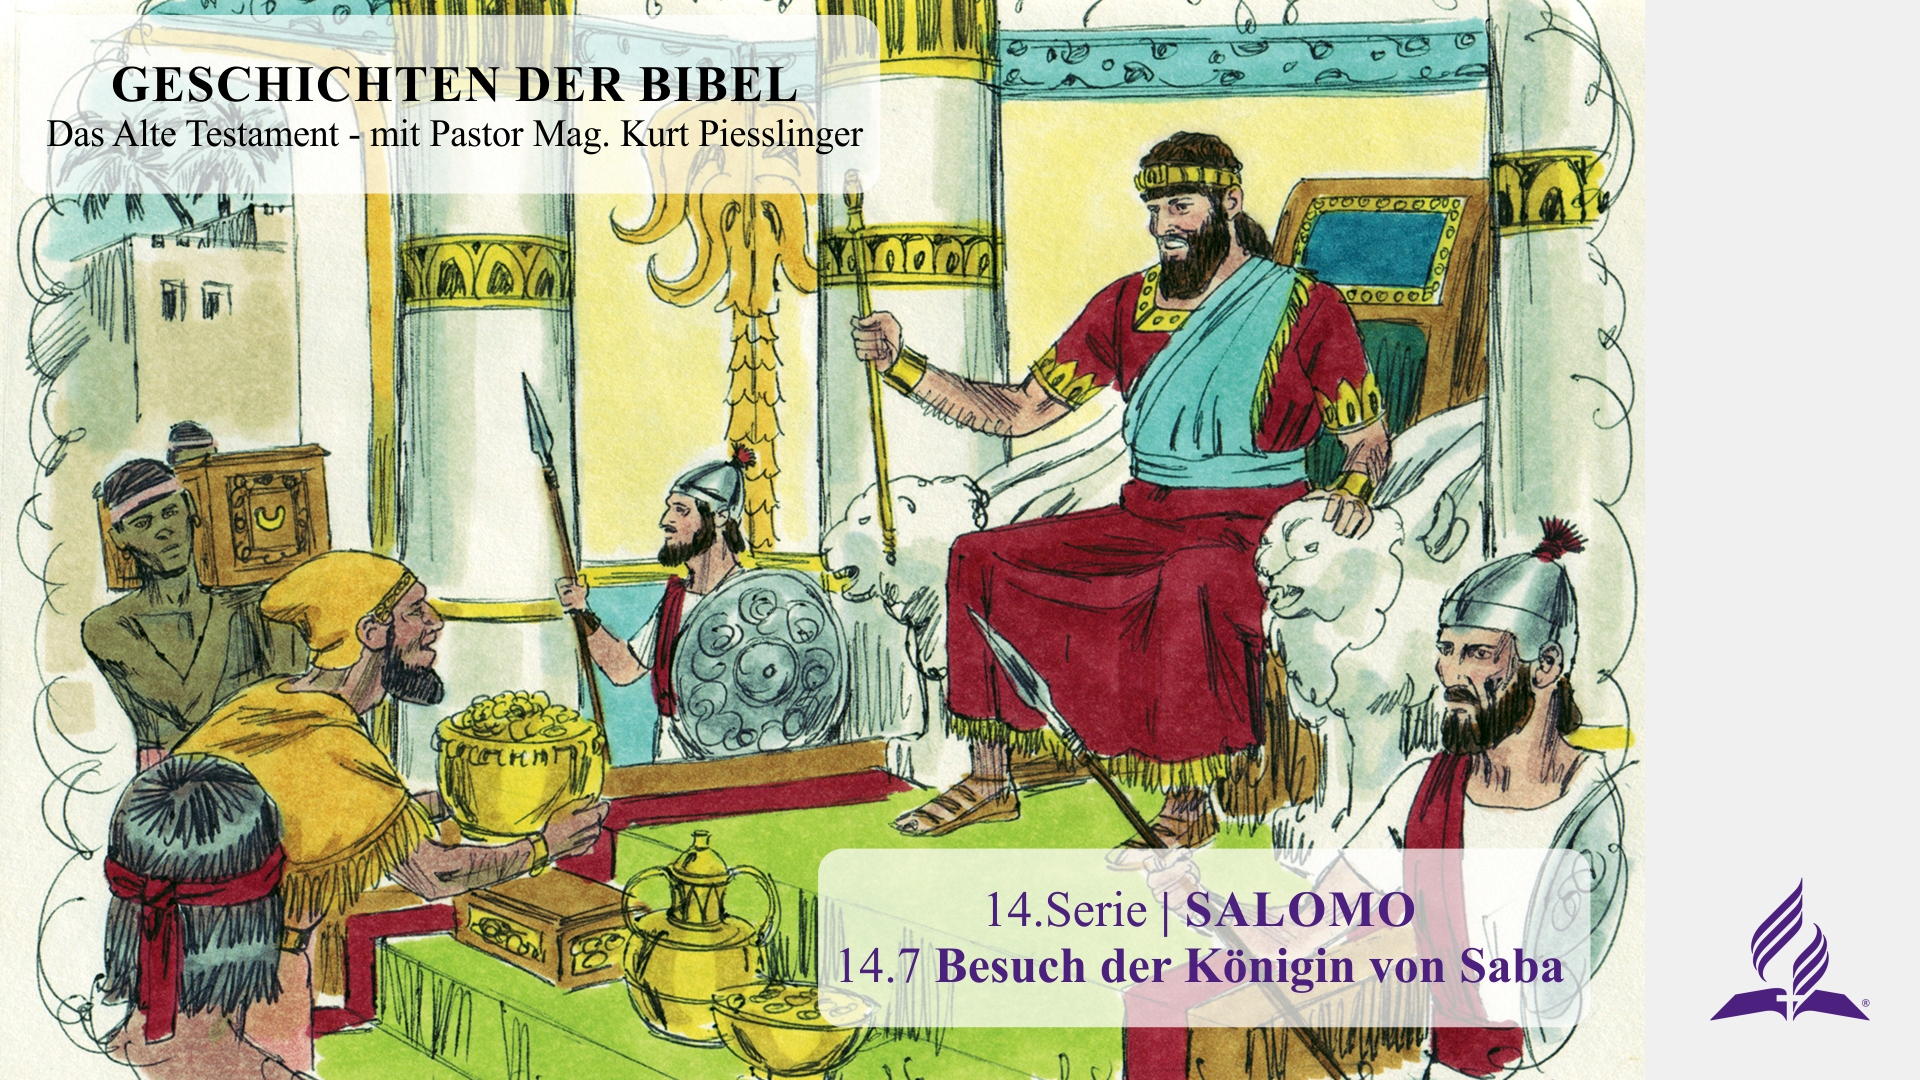 GESCHICHTEN DER BIBEL: 14.7 Besuch der Königin von Saba – 14.SALOMO | Pastor Mag. Kurt Piesslinger